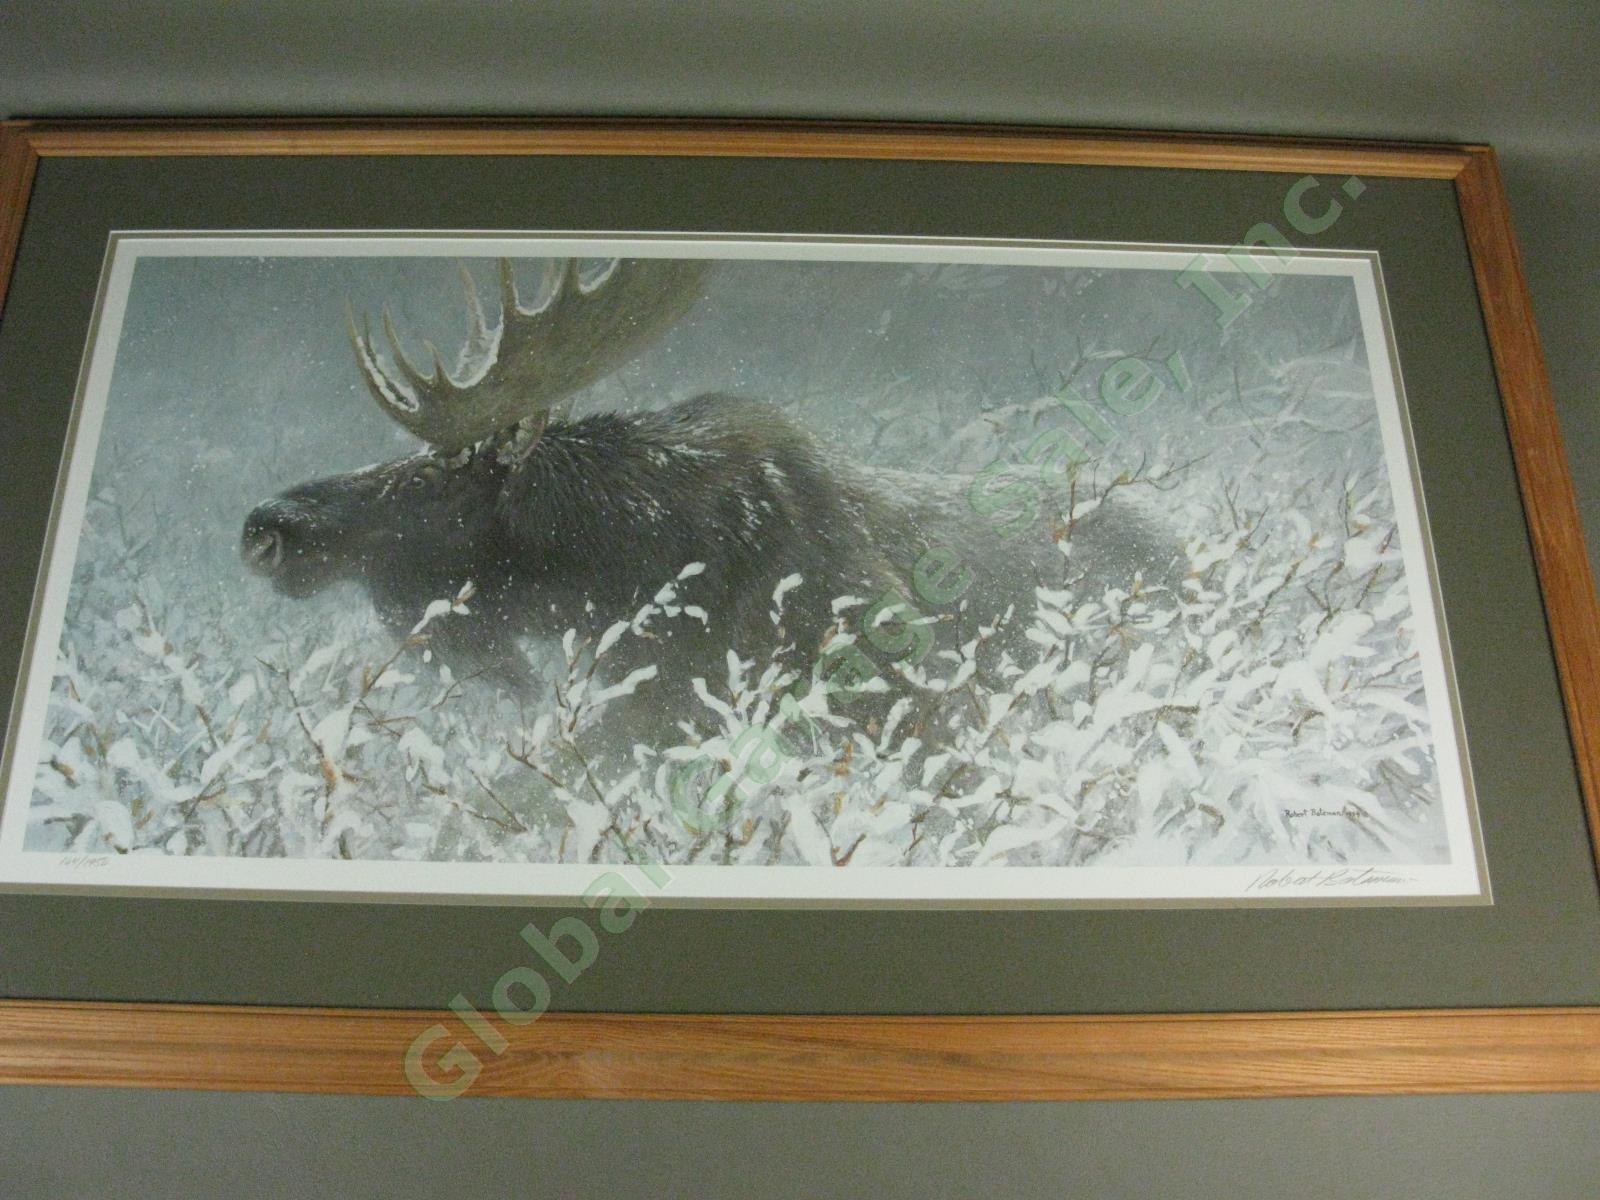 Robert Bateman 1994 Signed Print Winter Run Bull Moose Ltd Ed #164/1950 16"x32"